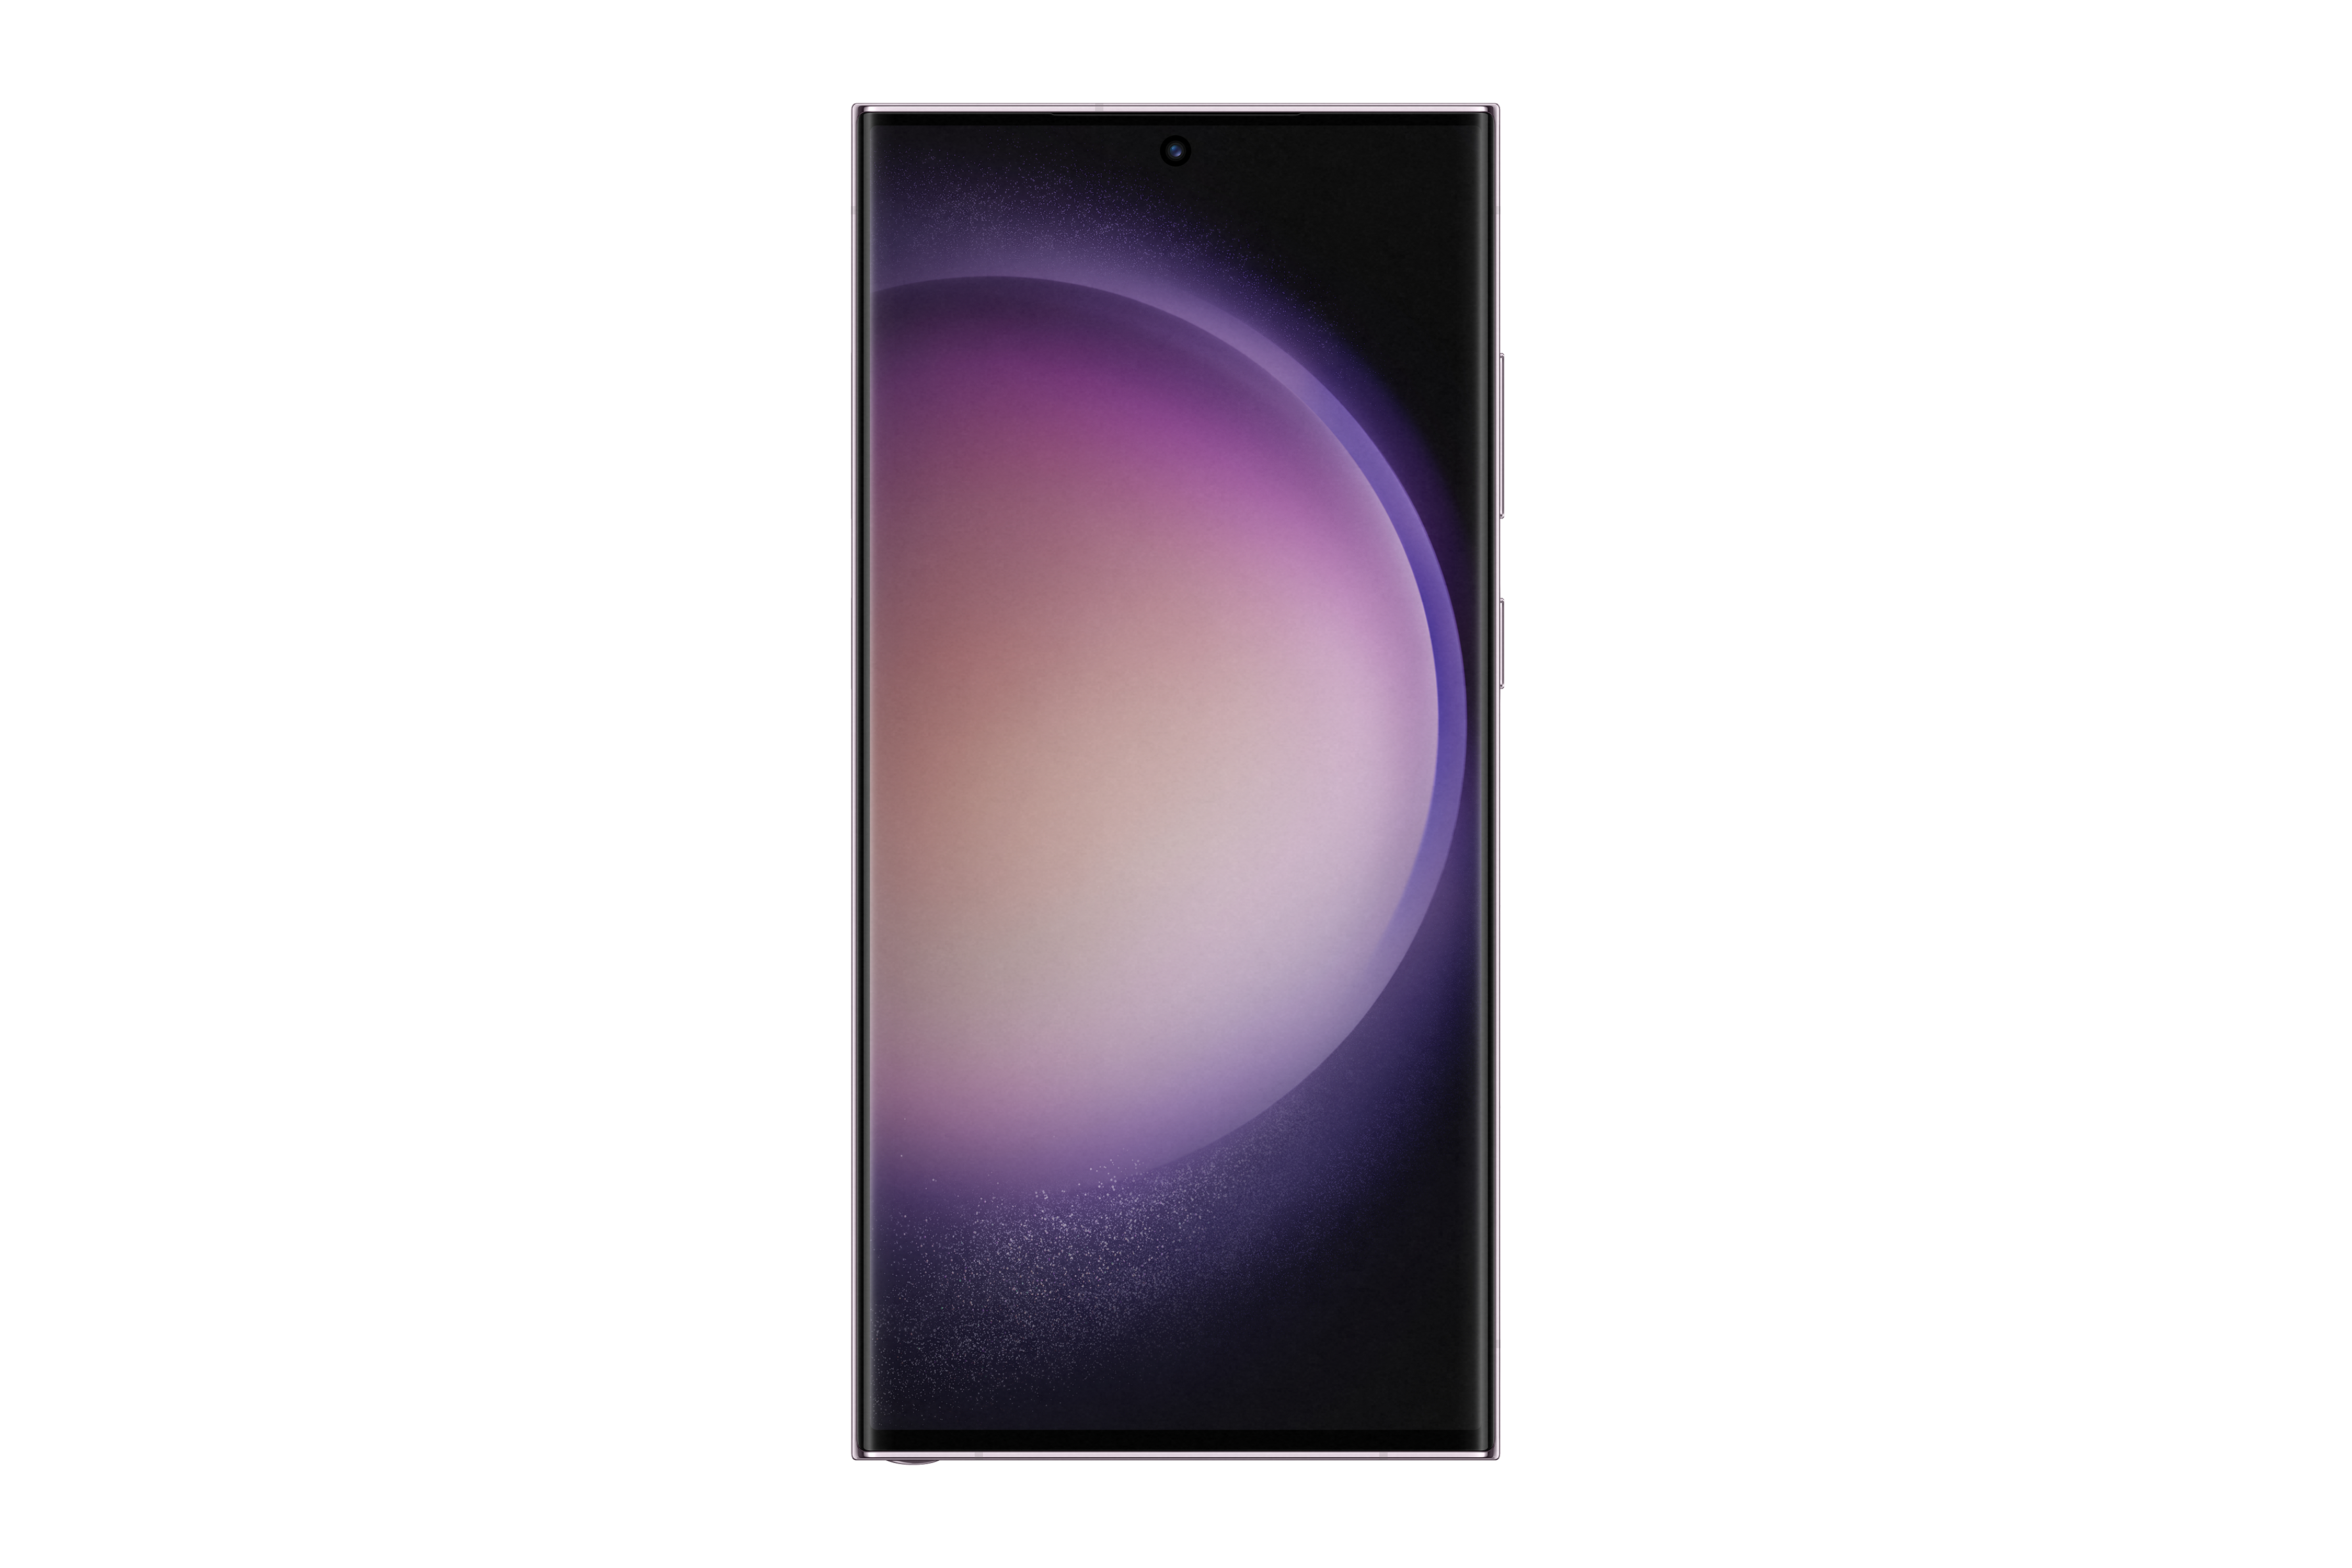 5G Ultra SAMSUNG GB Dual Galaxy Lavender 256 S23 SIM